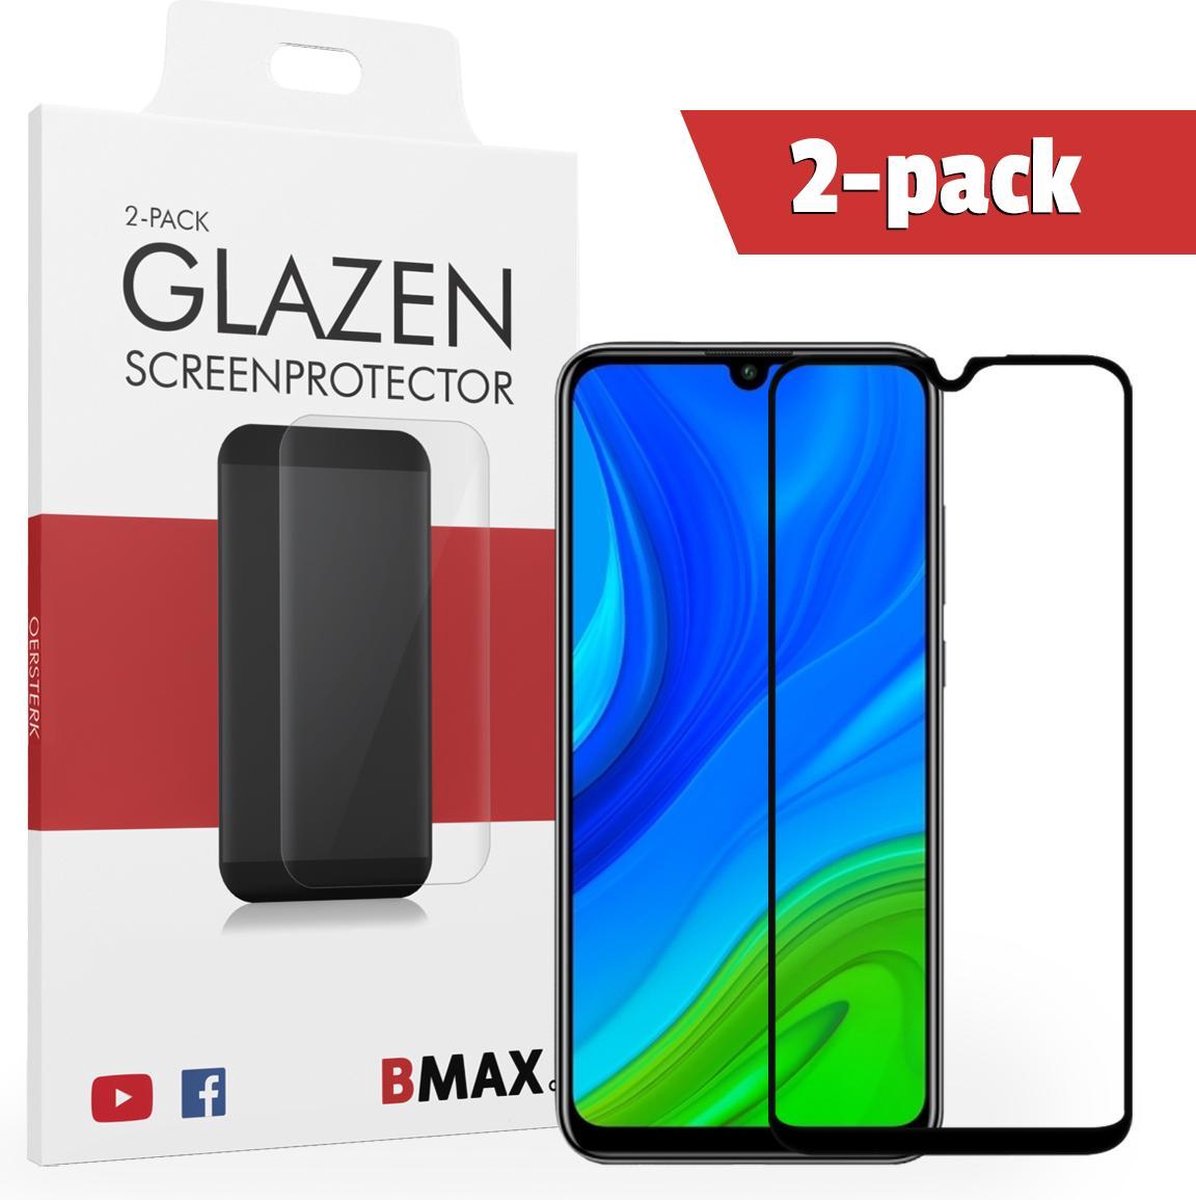 2-pack Bmax Huawei P Smart 2020 Screenprotector - Glass - Full Cover 2.5d - Black